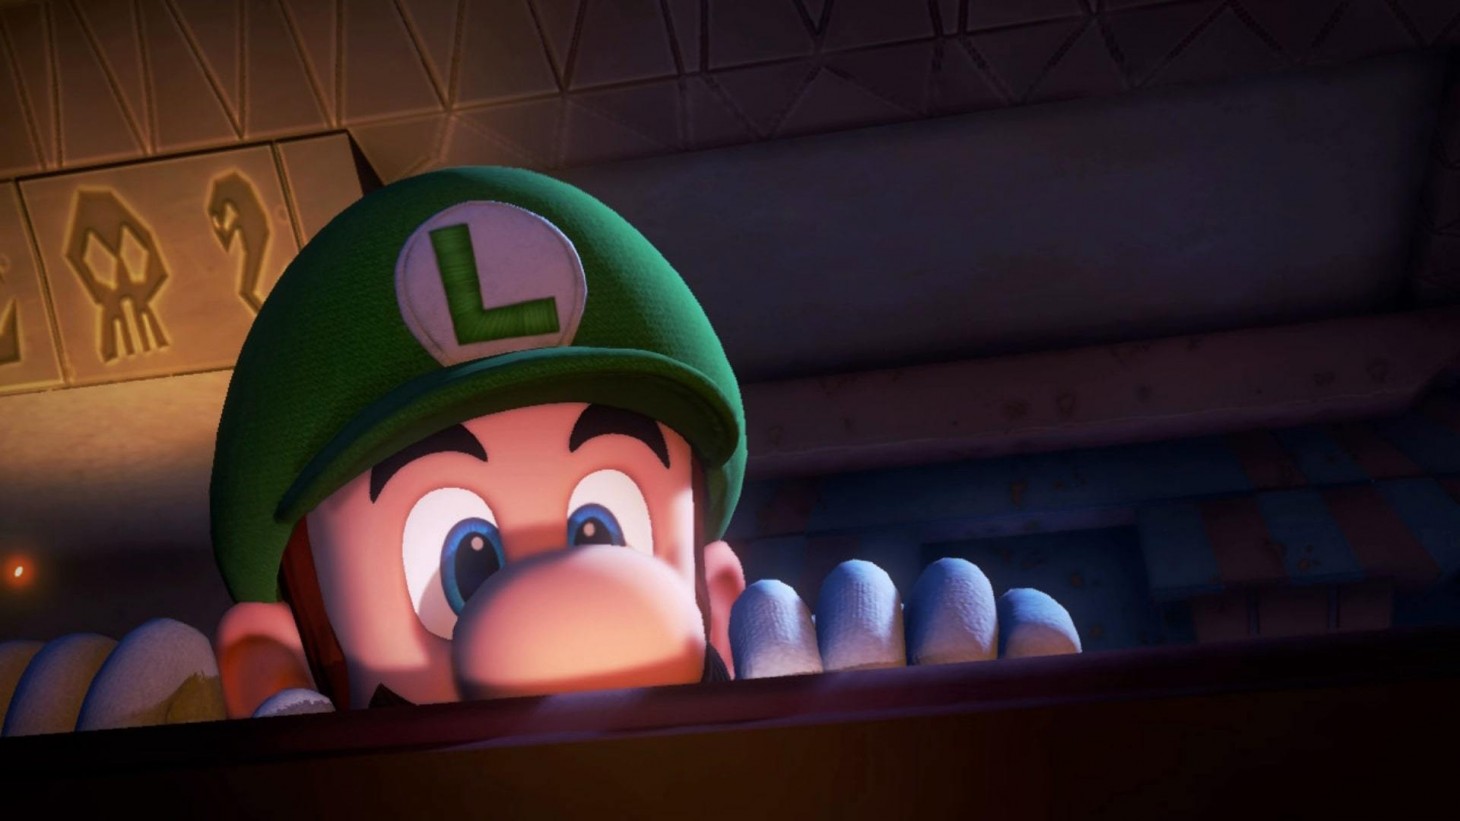 Nintendo Acquires Next Level Games, Studio Behind 'Luigi's Mansion 3